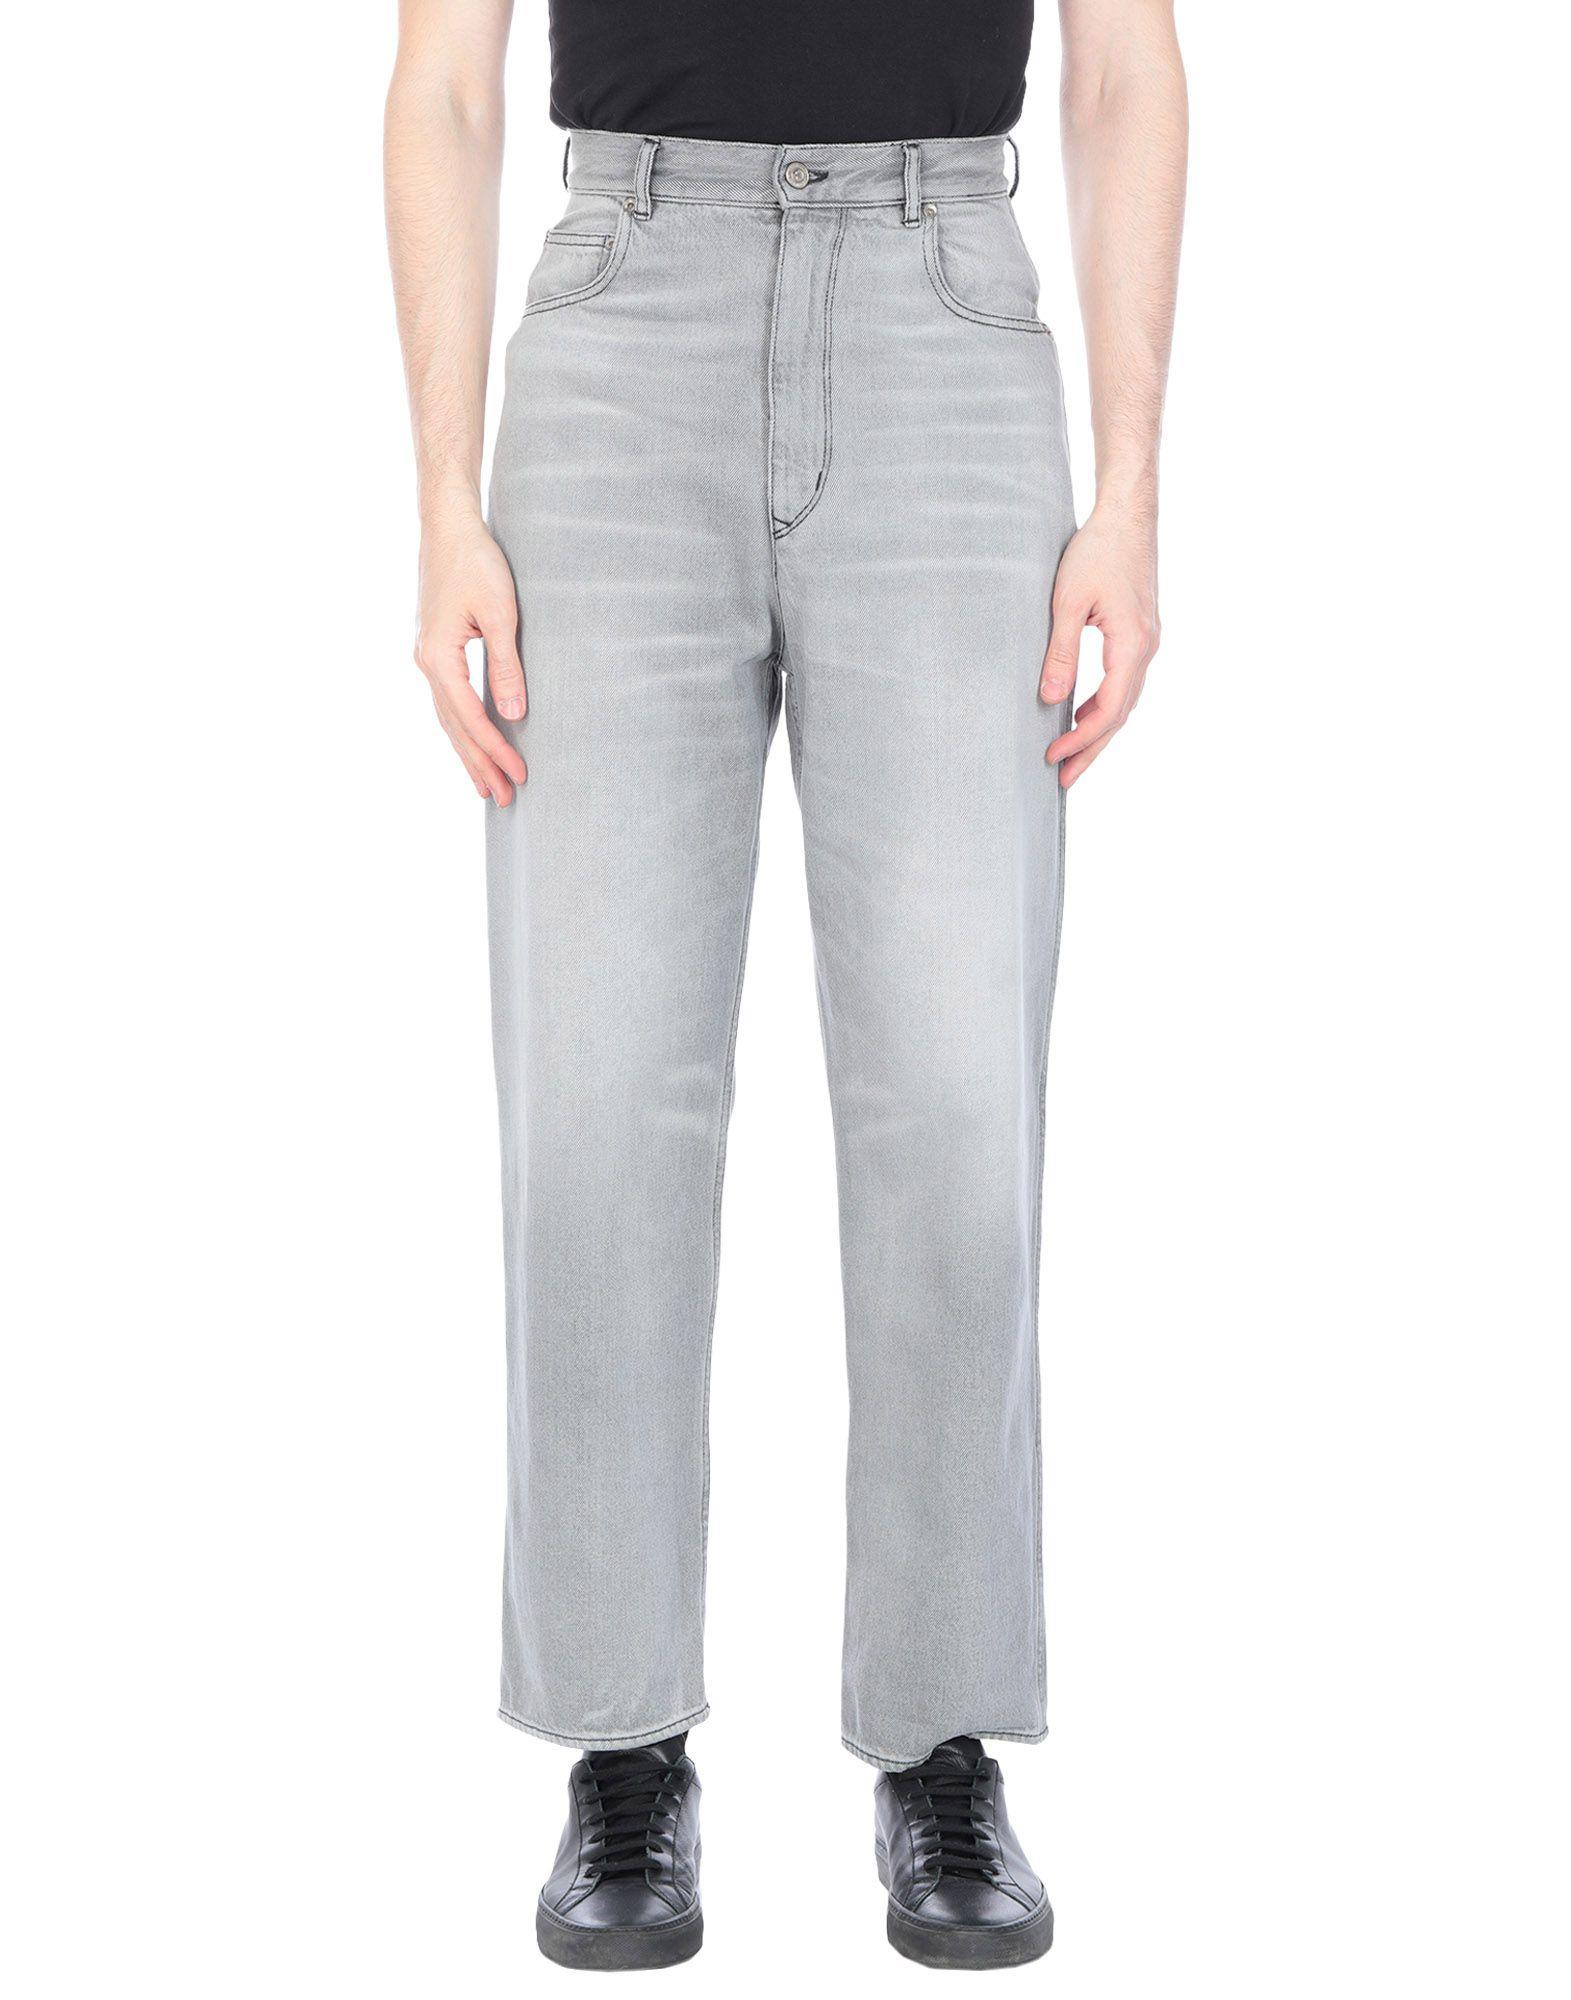 Golden Goose Deluxe Brand Denim Pants in Grey (Gray) for Men - Lyst